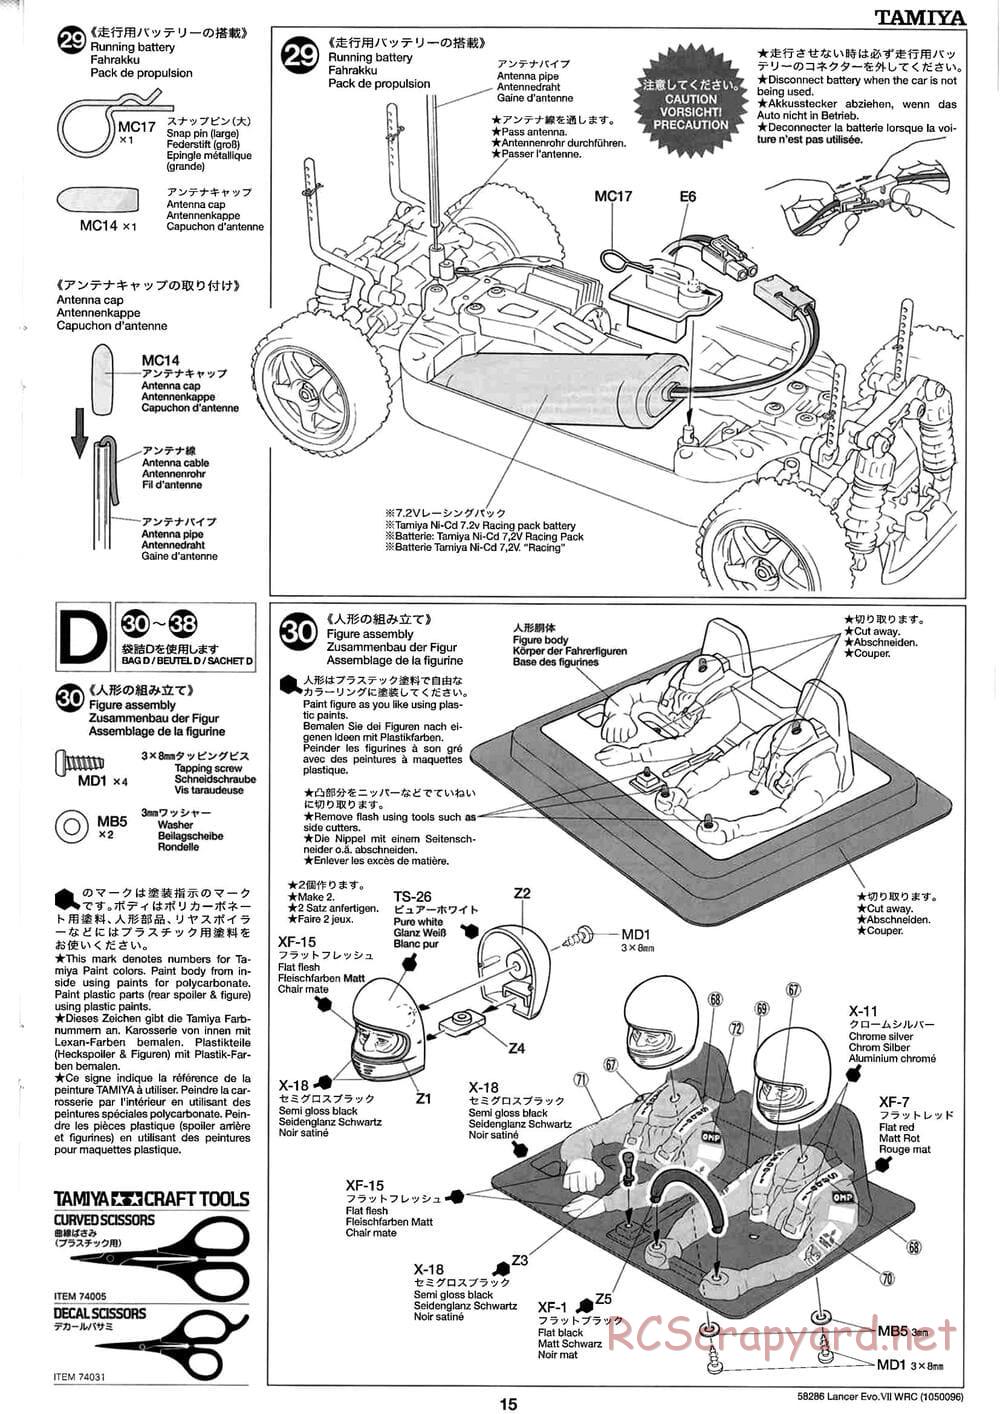 Tamiya - Mitsubishi Lancer Evolution VII WRC - TB-01 Chassis - Manual - Page 15